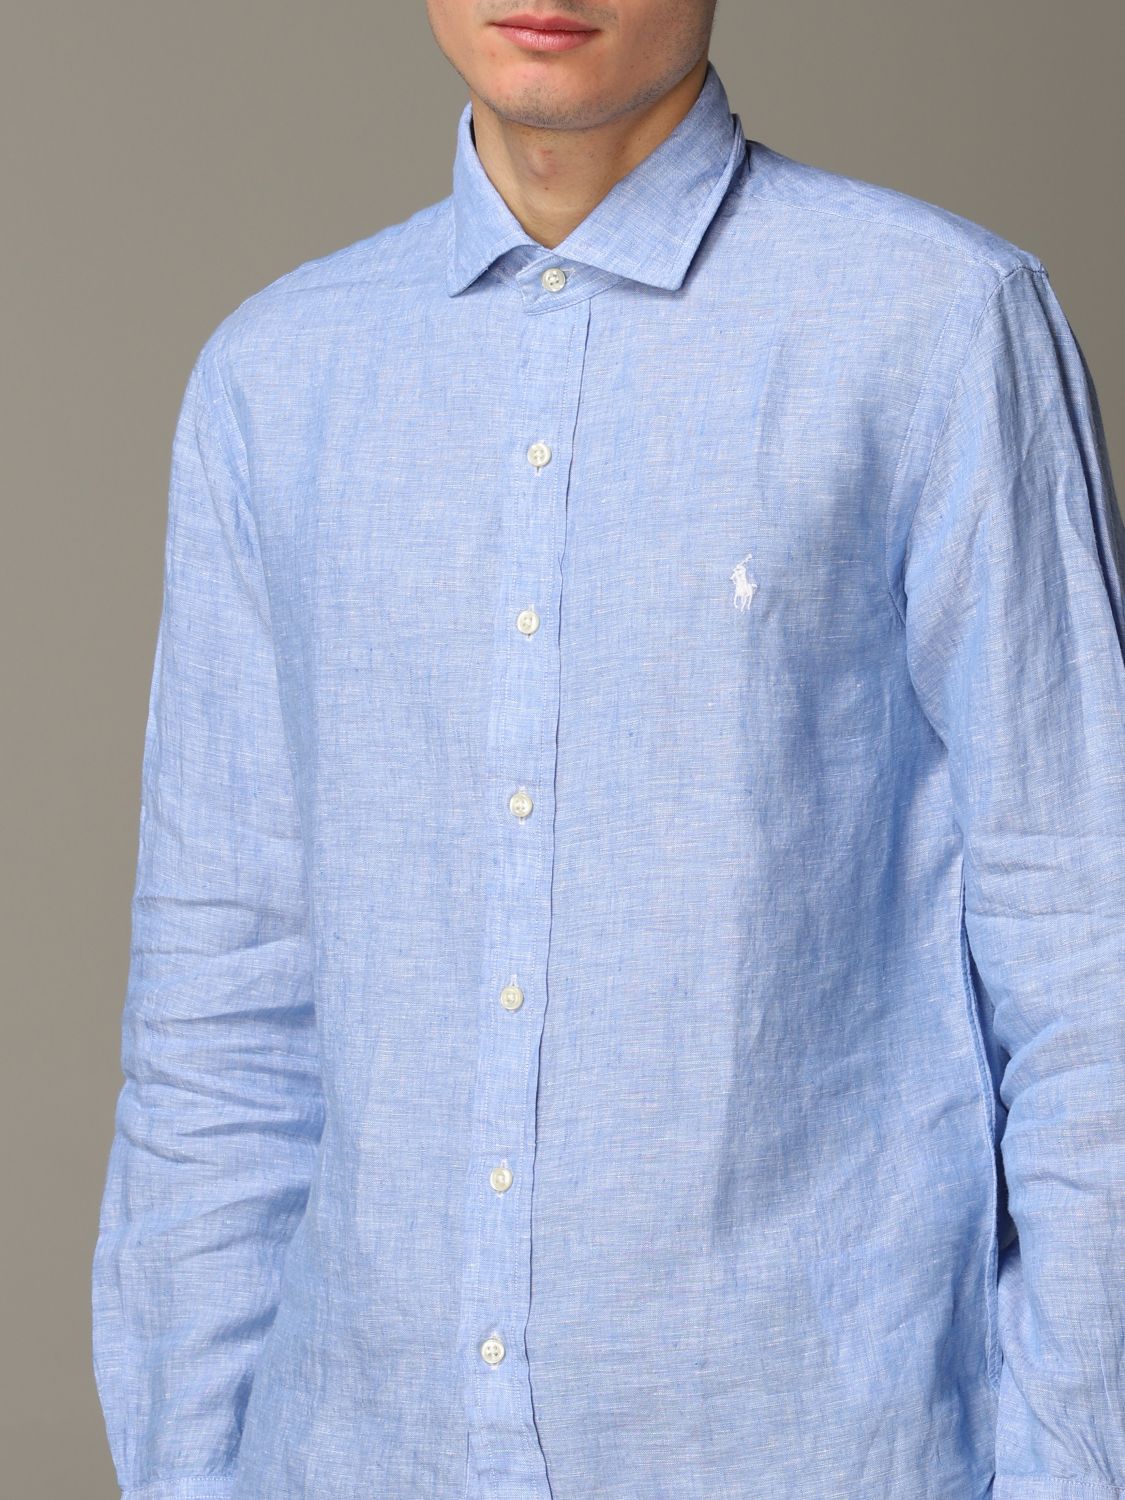 Shirt Polo Ralph Lauren: Polo Ralph Lauren shirt for men gnawed blue 5